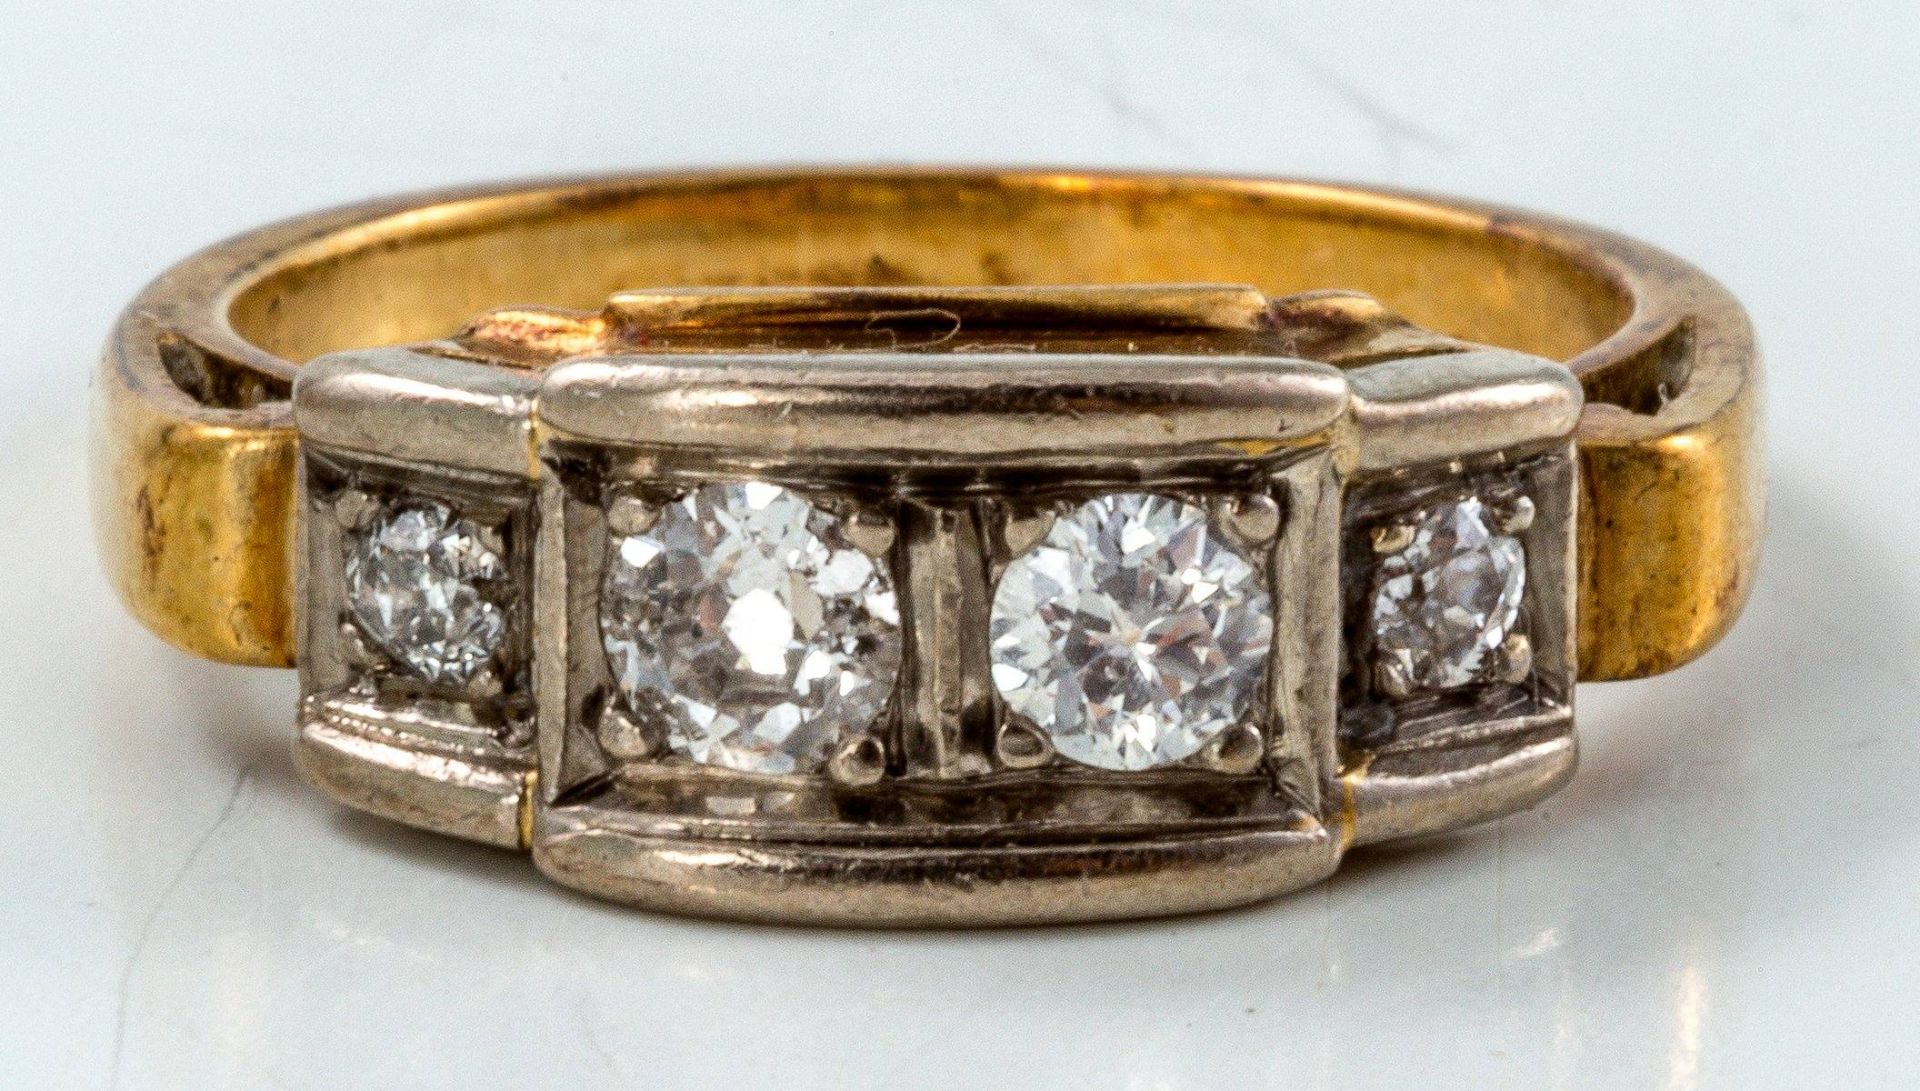 Diamantbandring585/f. Gold. Ausgefasst mit 4 Brillanten nach Verlauf von zus. ca. 0,40 ct. Ringgr.